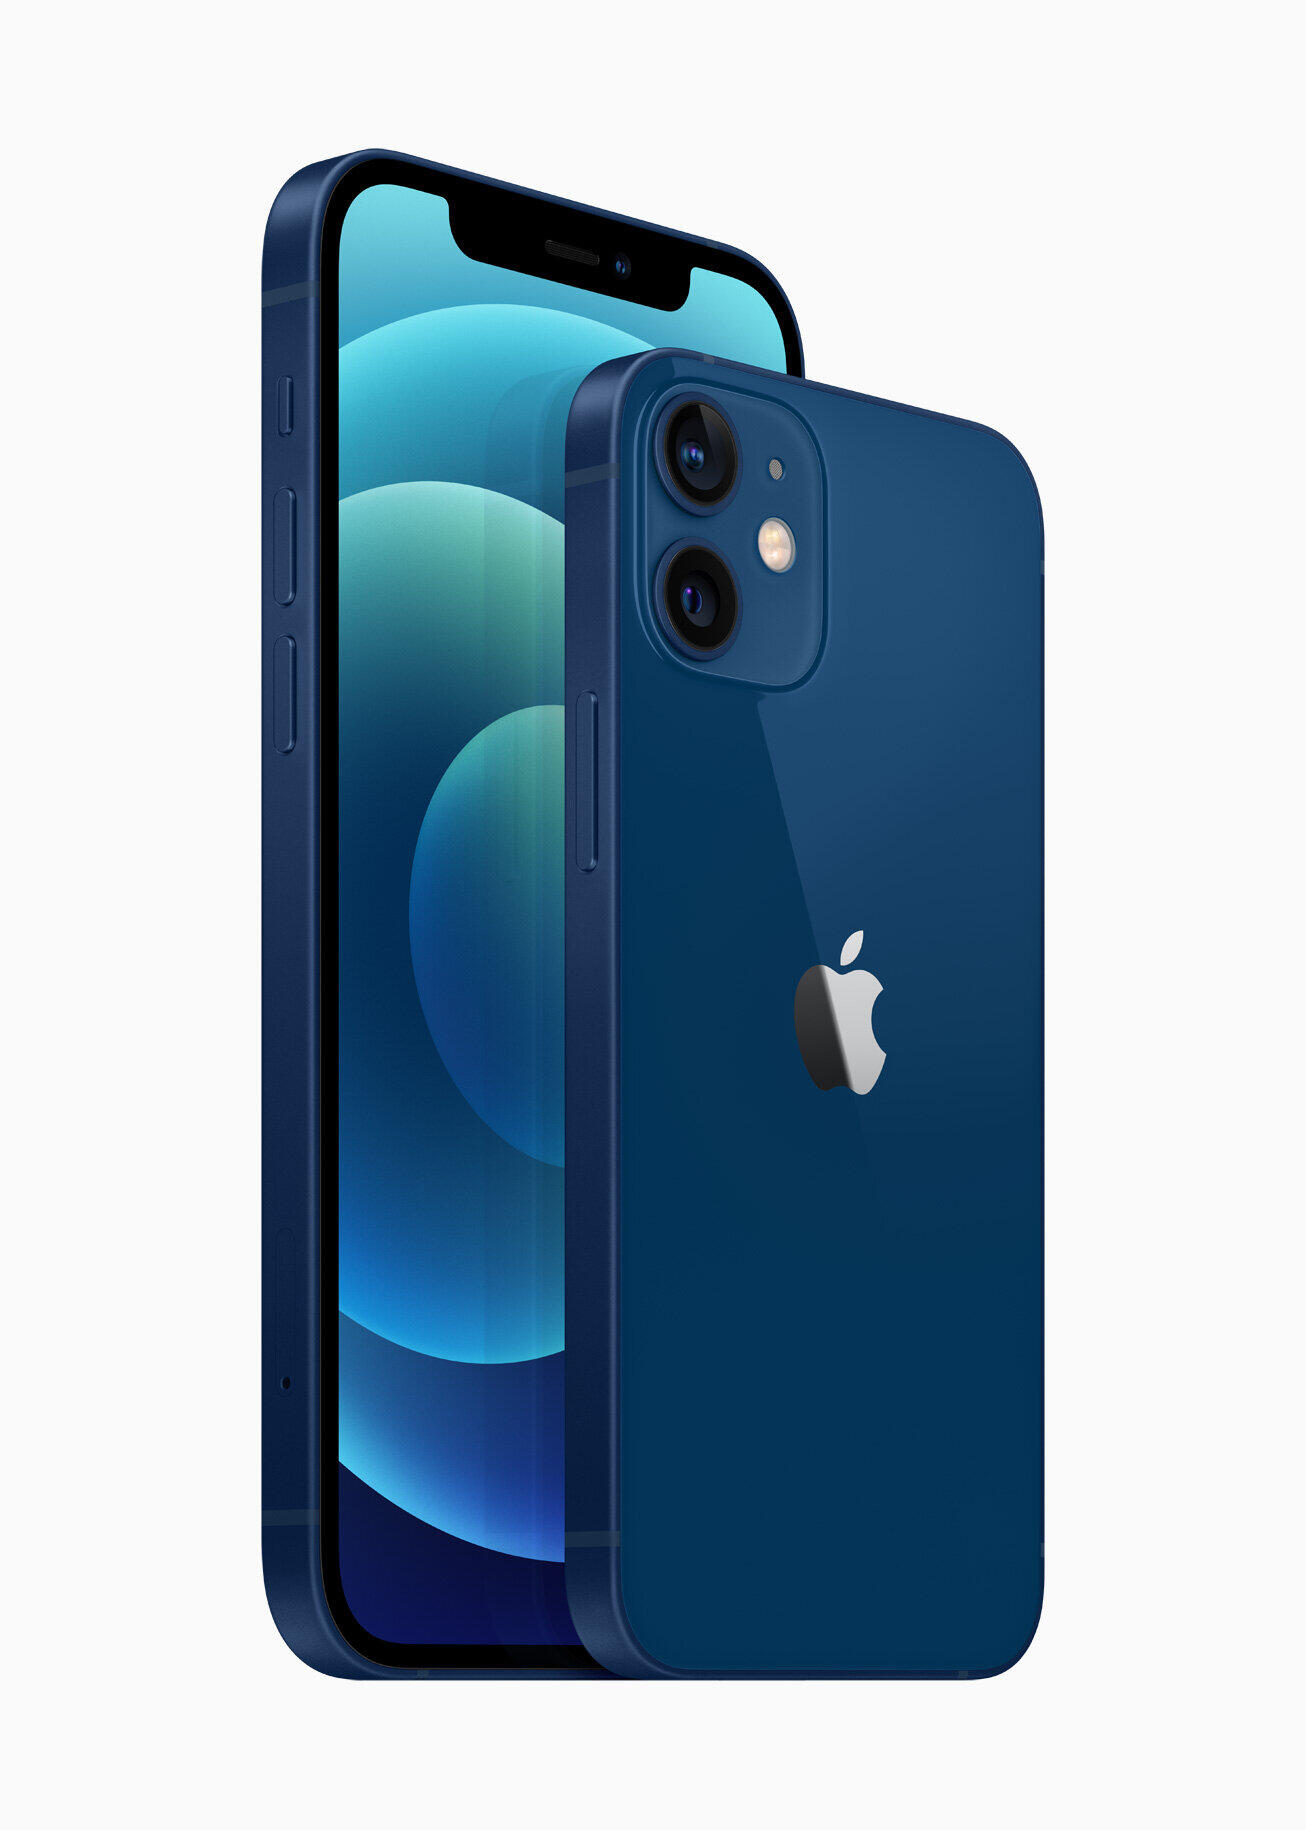 「iPhone12」ブルーが公式イメージと全然違う？ 「ウェイボー」で物議の画像 (2020年10月22日) - エキサイトニュース